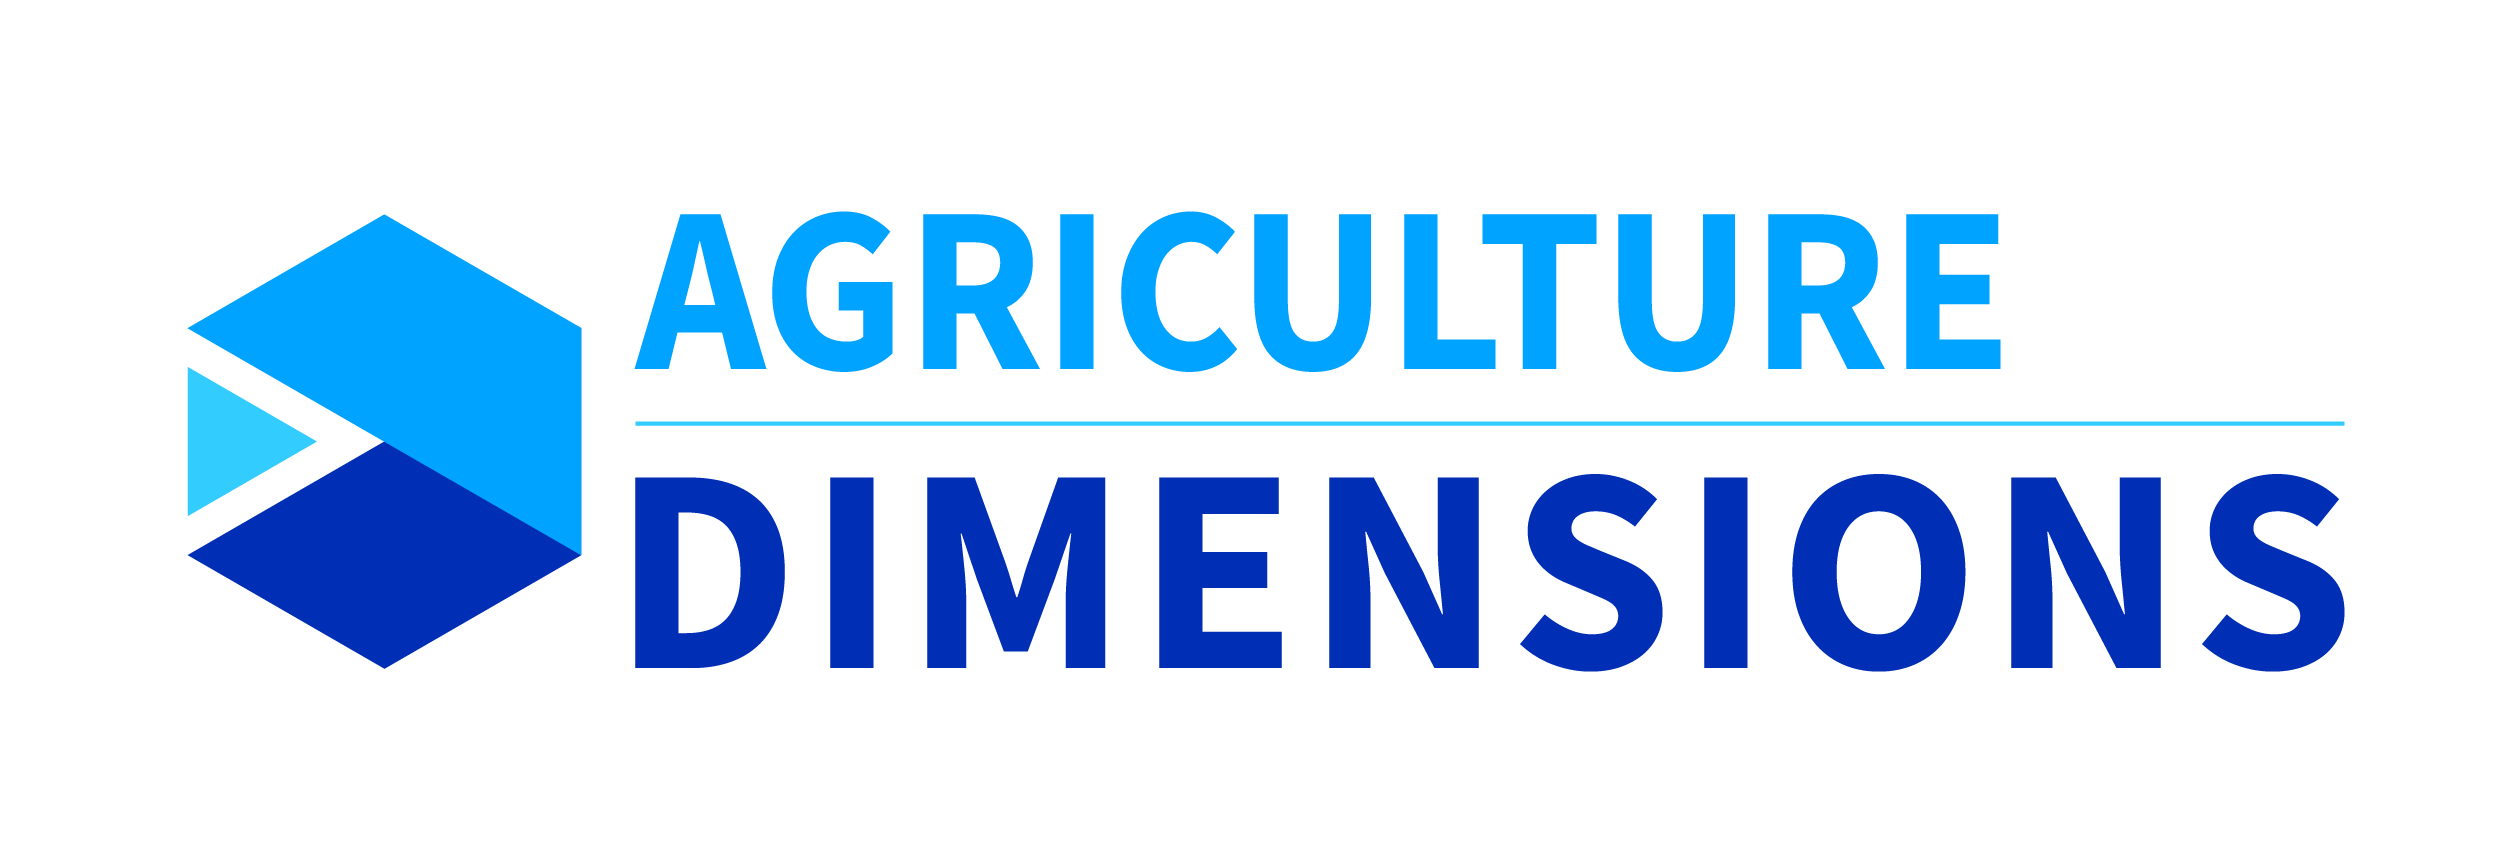 Agriculture Dimensions - Acceltech Pte Ltd